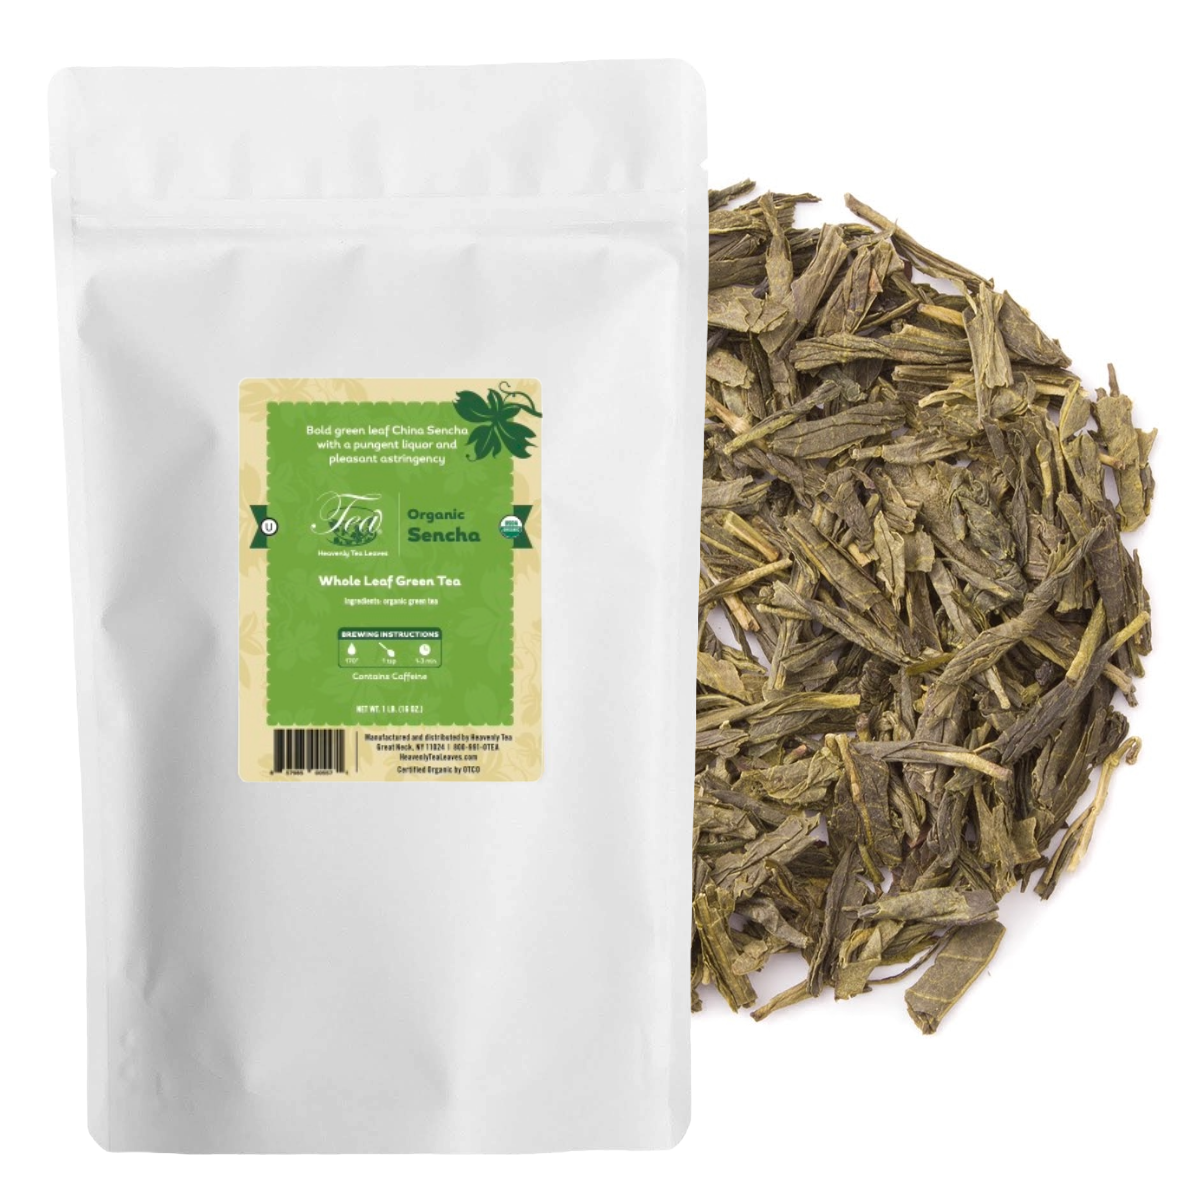 Organic Sencha - Bulk Loose Leaf Green Tea - Heavenly Tea Leaves